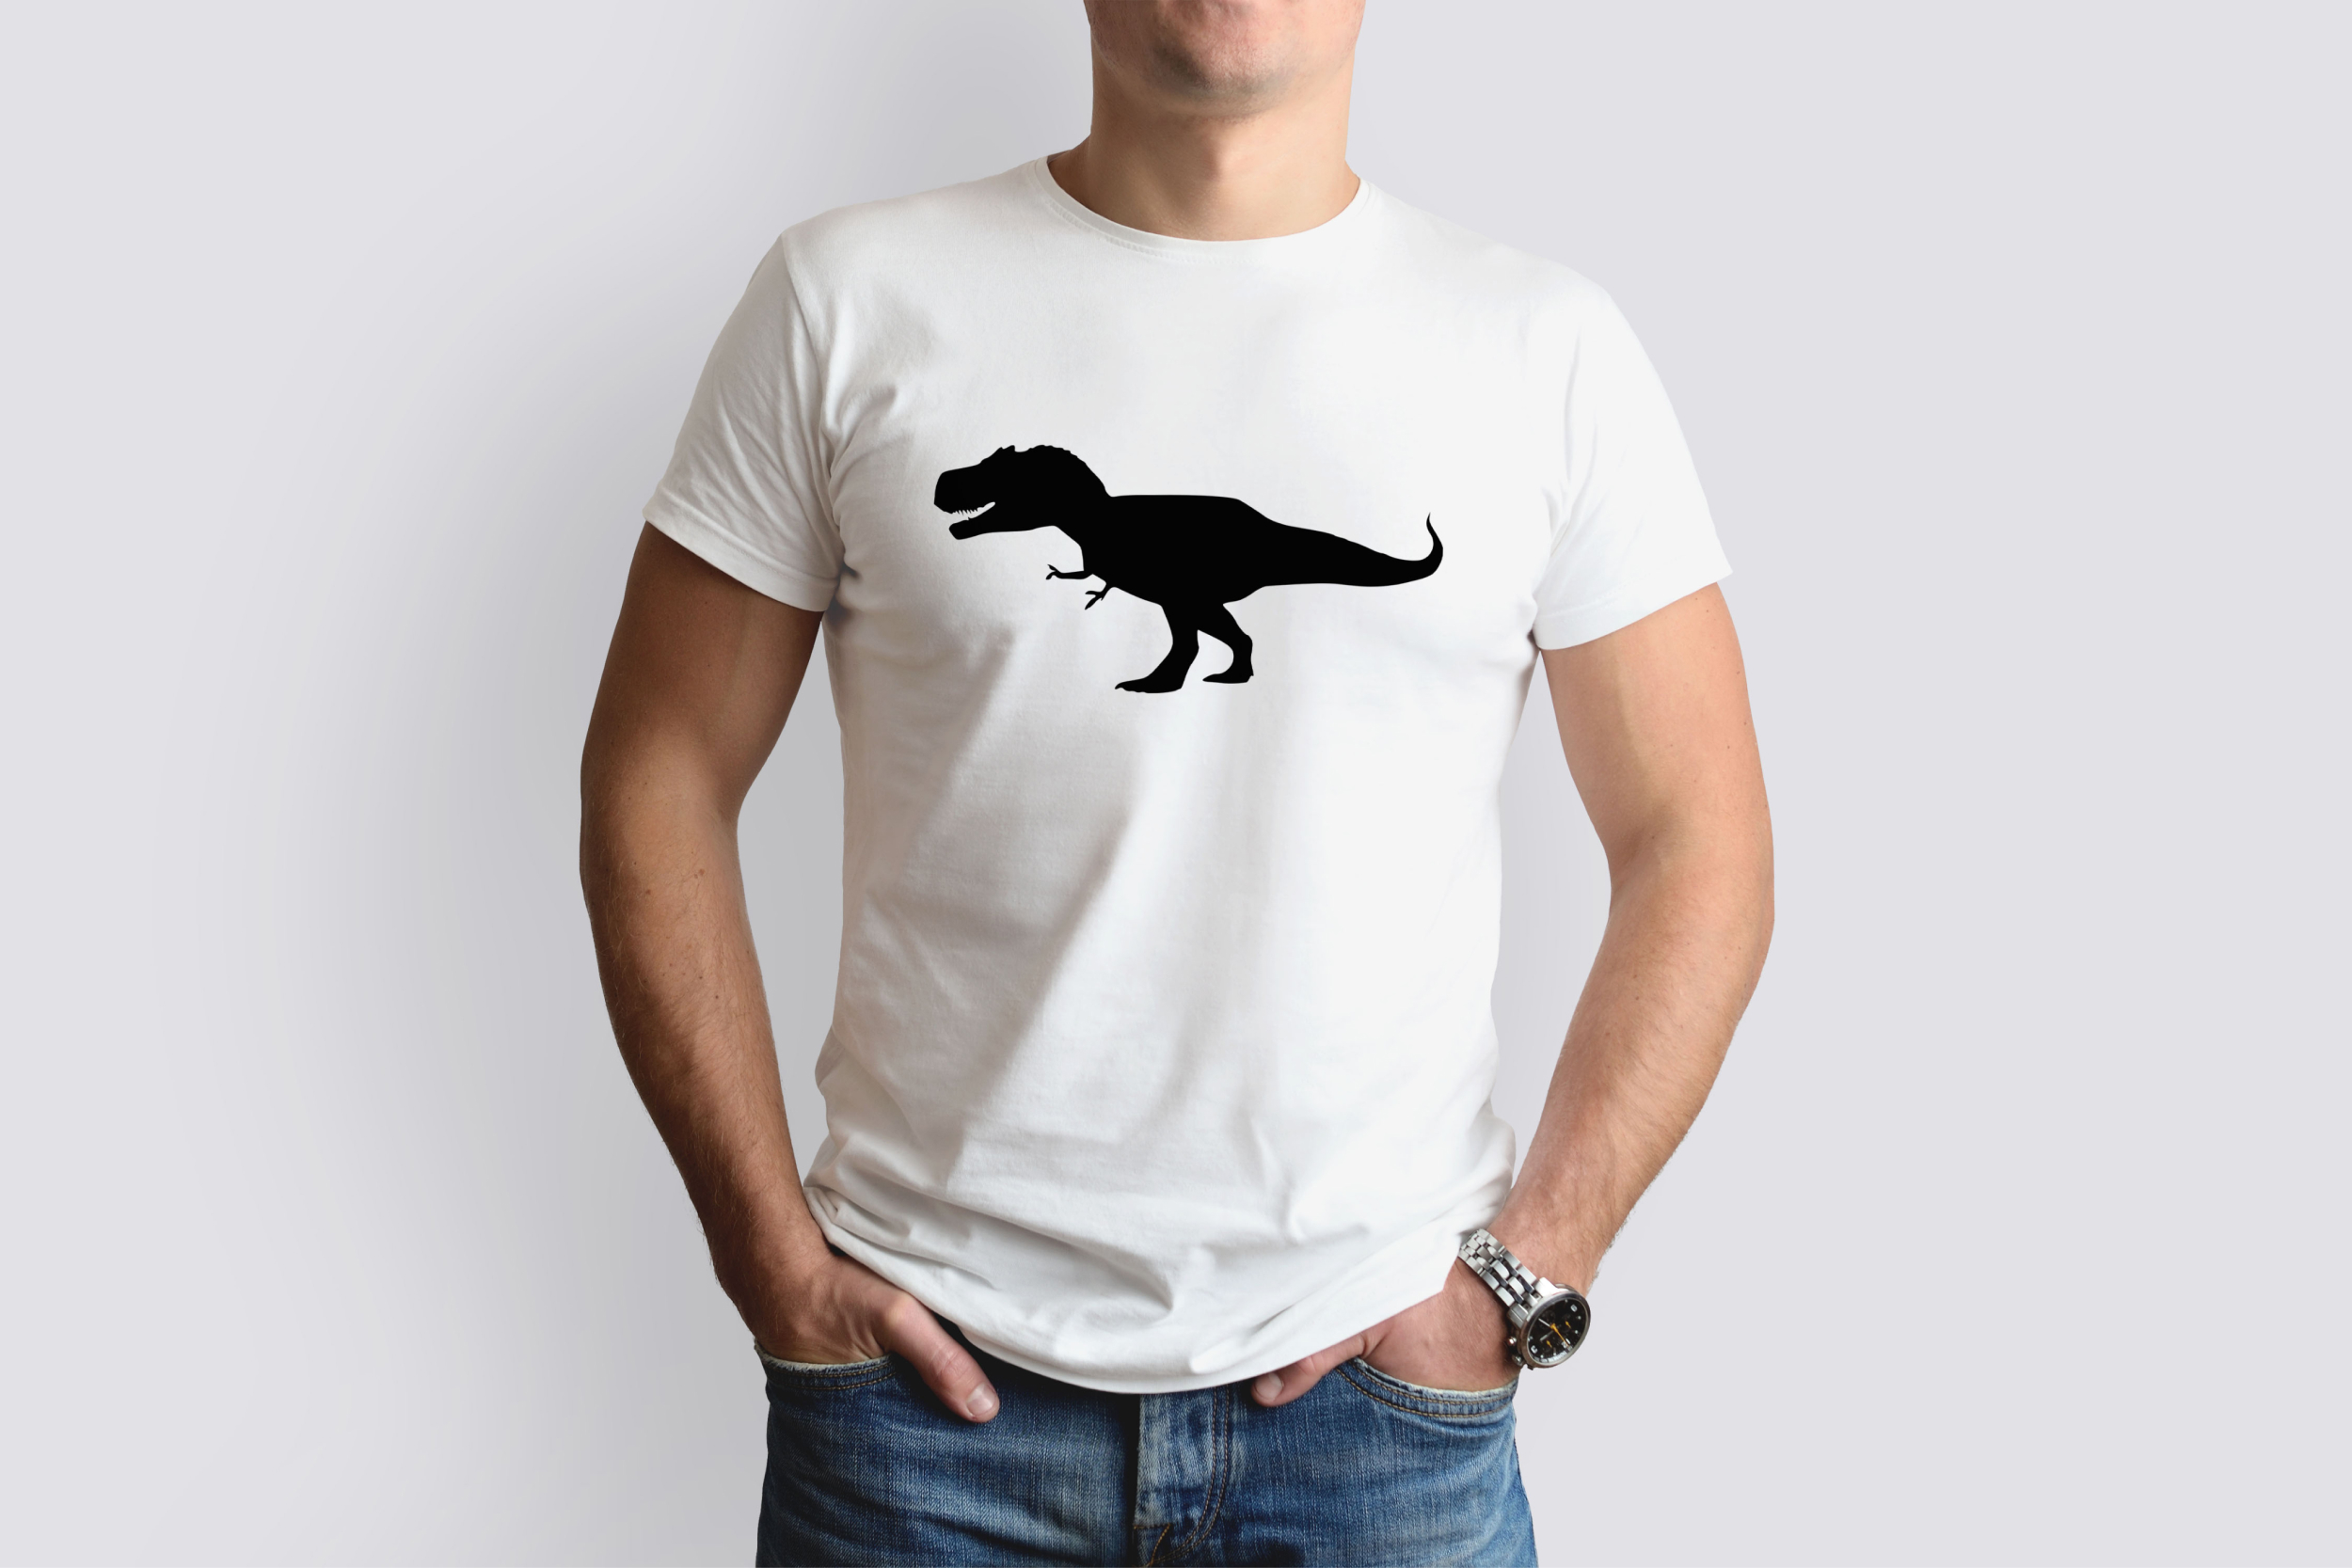 t rex silhouette t shirt designs bundle 07 819